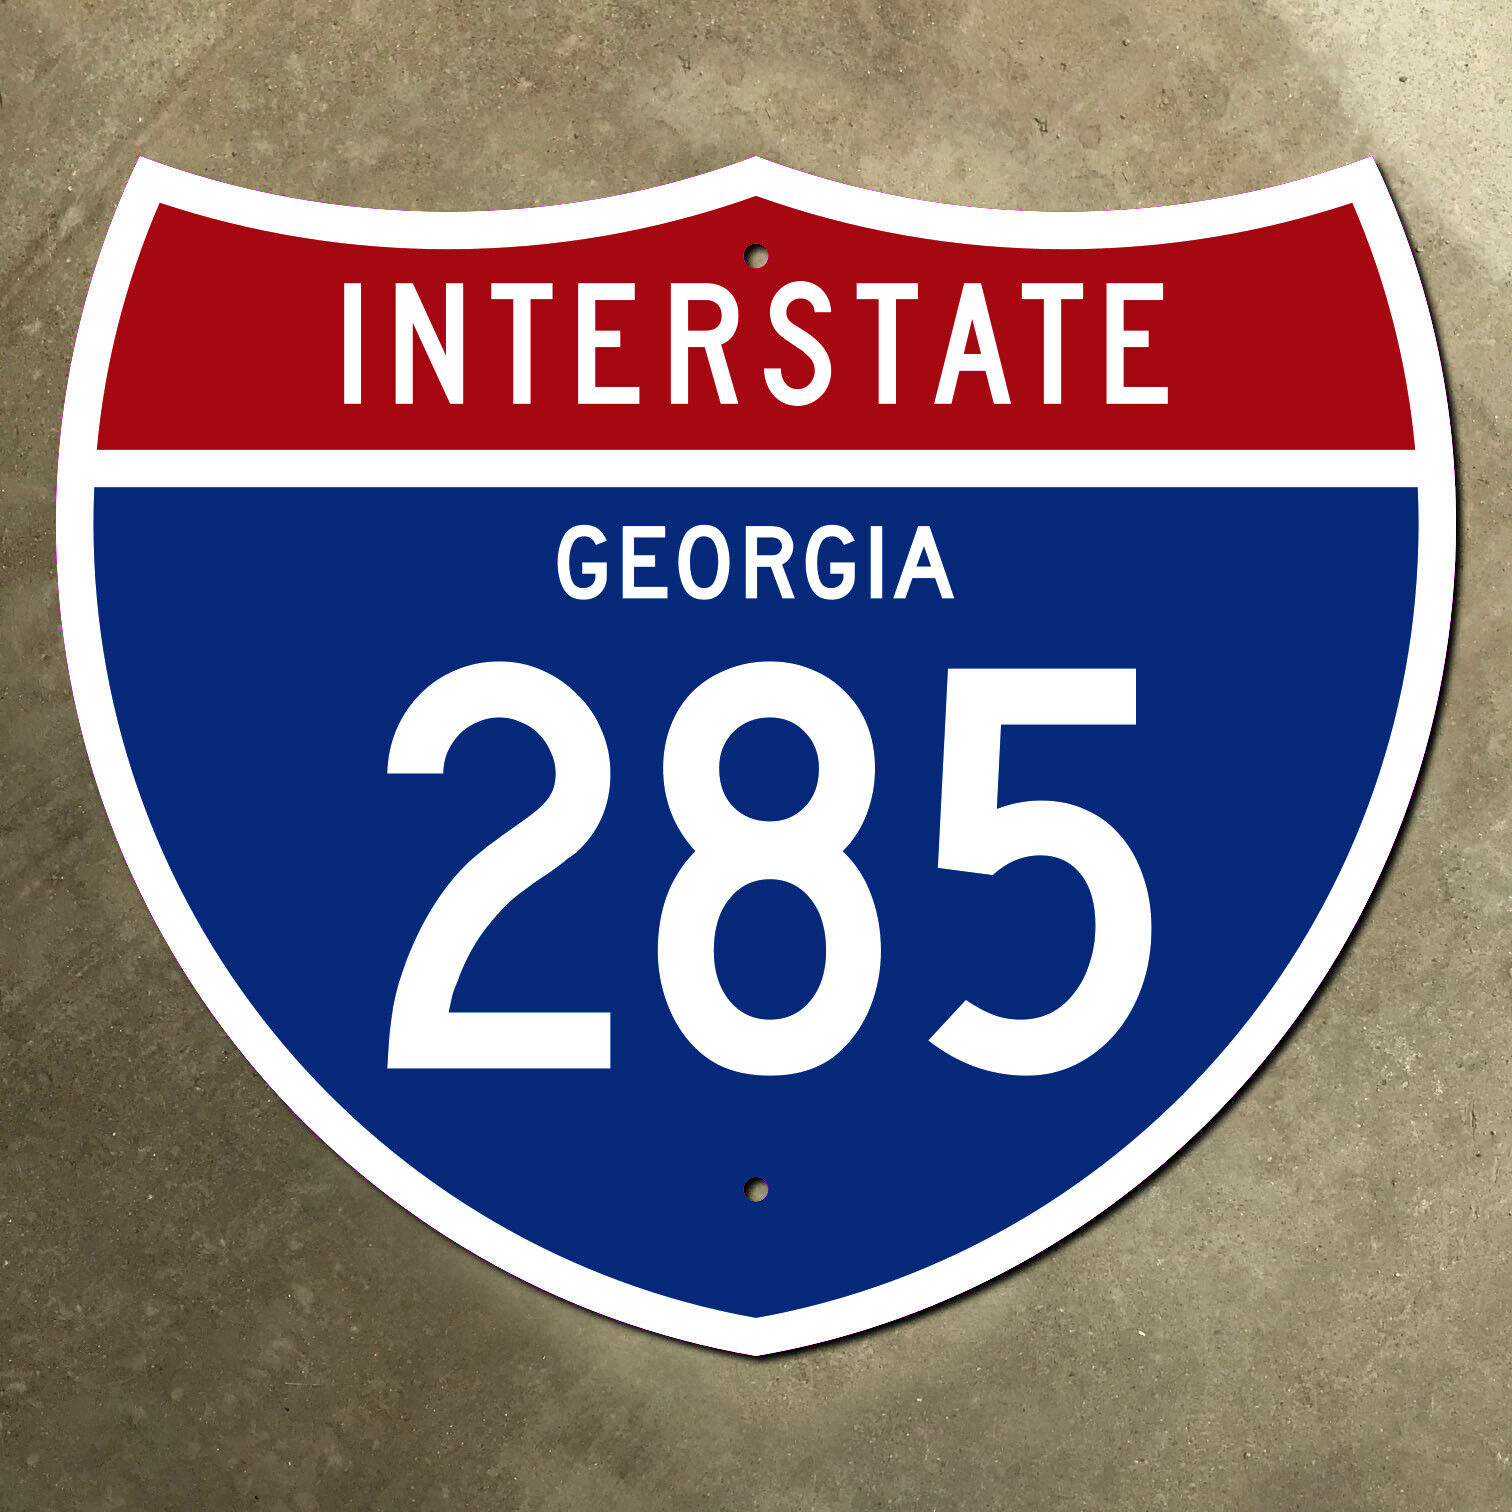 Georgia interstate route 285 highway marker road sign 13x11 Atlanta loop 1961